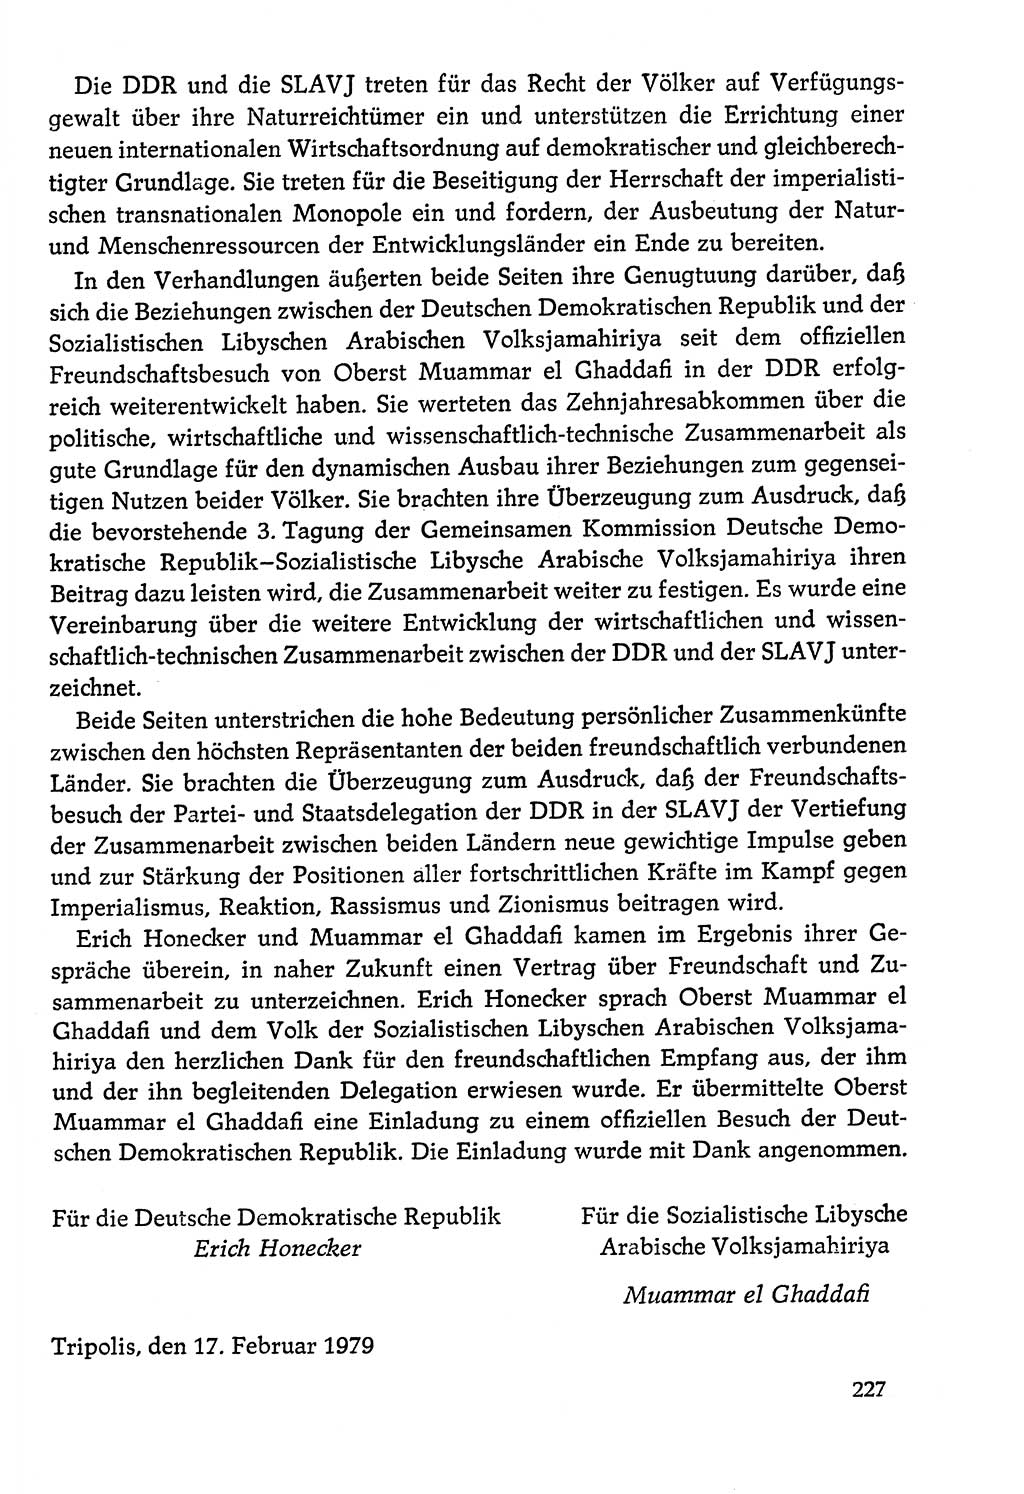 Dokumente der Sozialistischen Einheitspartei Deutschlands (SED) [Deutsche Demokratische Republik (DDR)] 1978-1979, Seite 227 (Dok. SED DDR 1978-1979, S. 227)